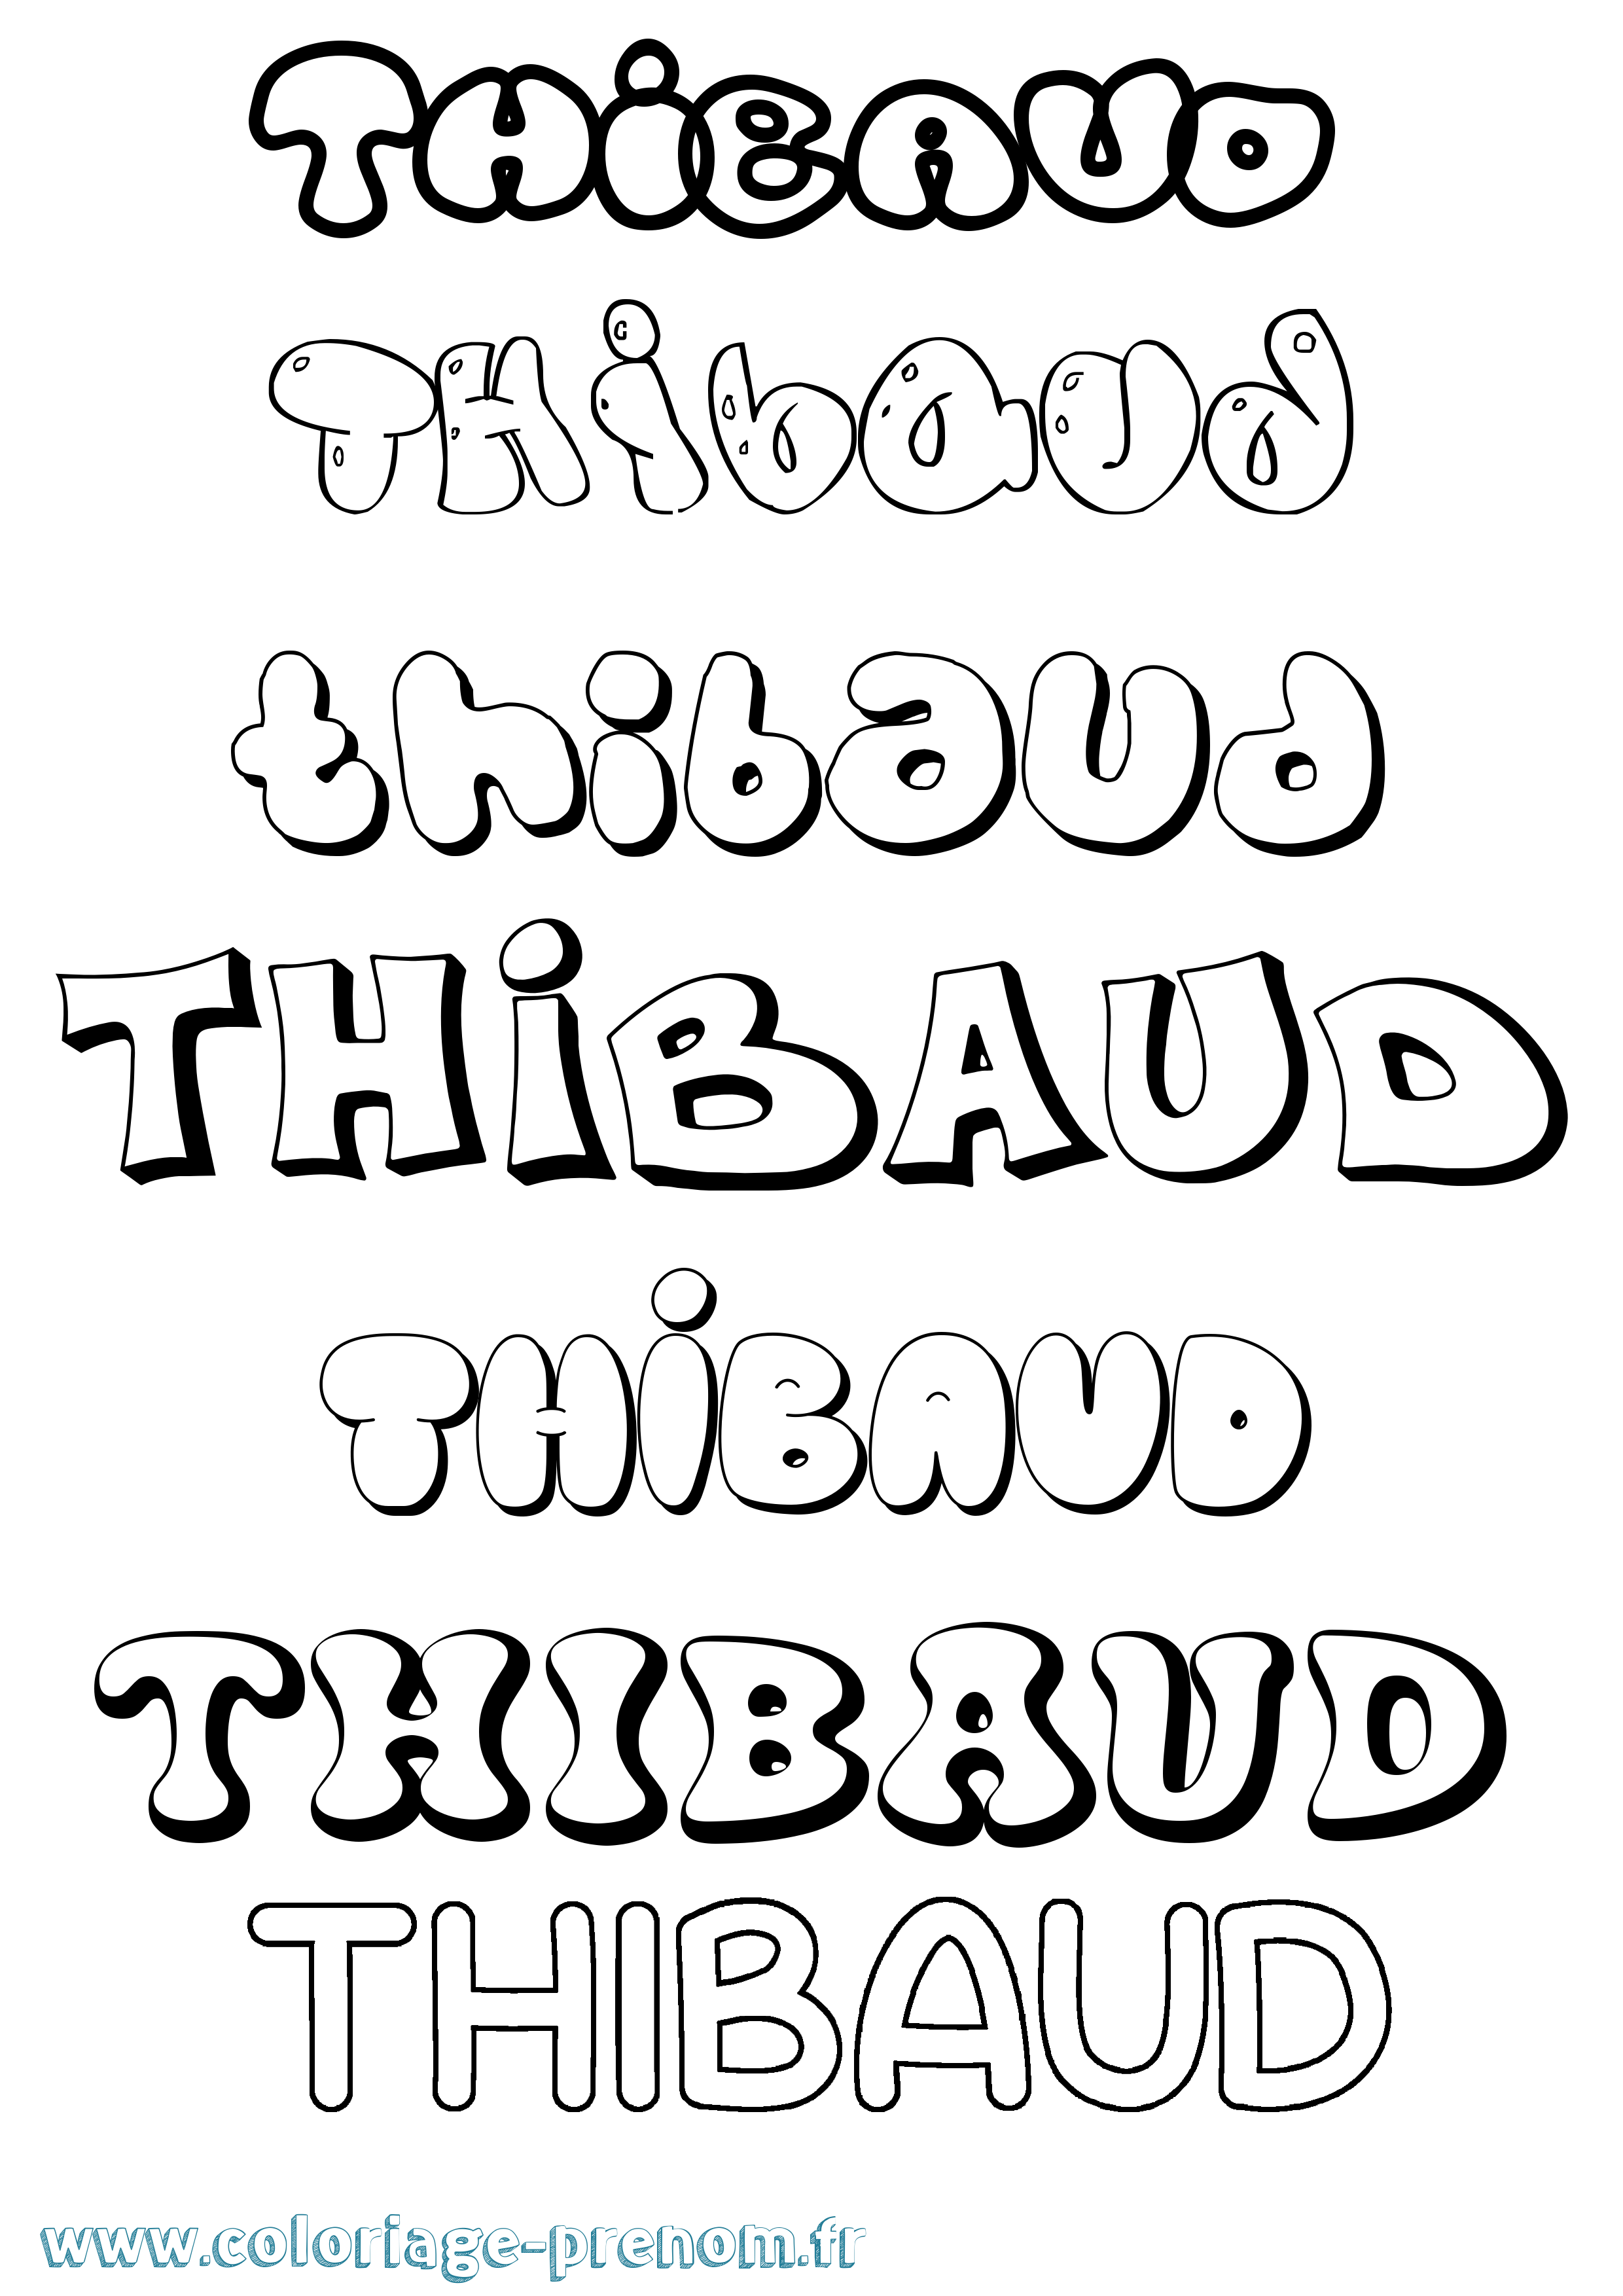 Coloriage prénom Thibaud Bubble